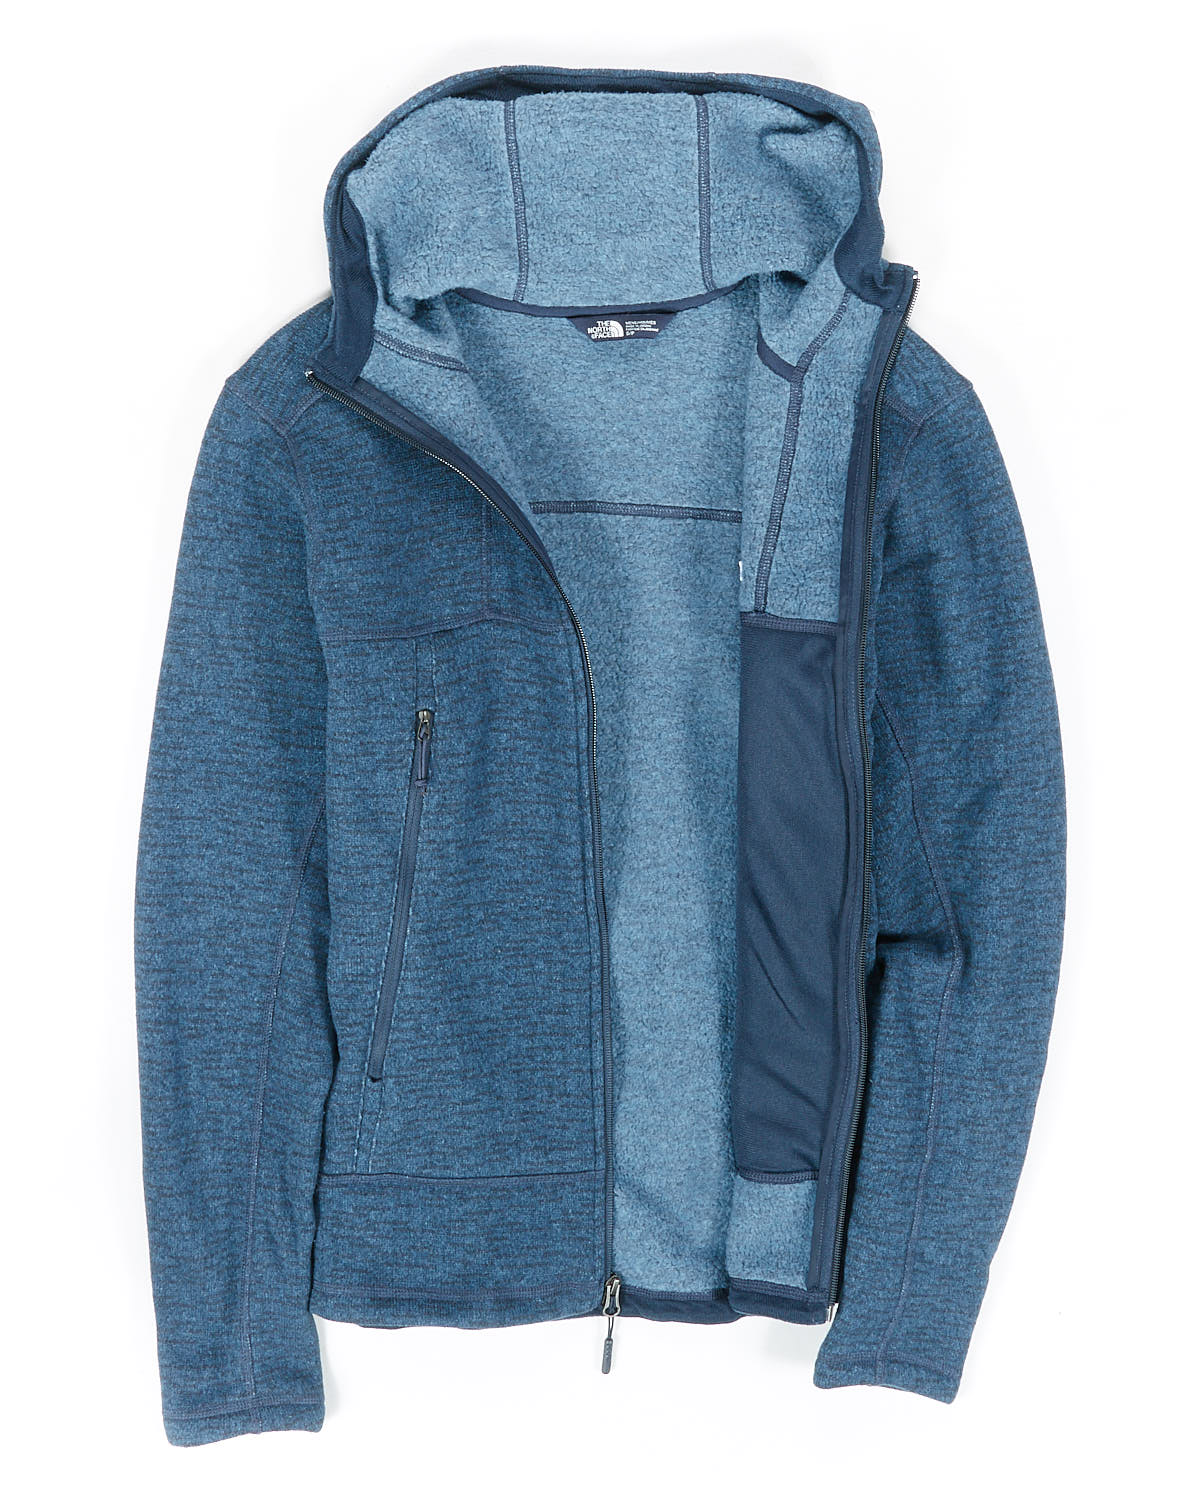 gordon lyons alpine jacket